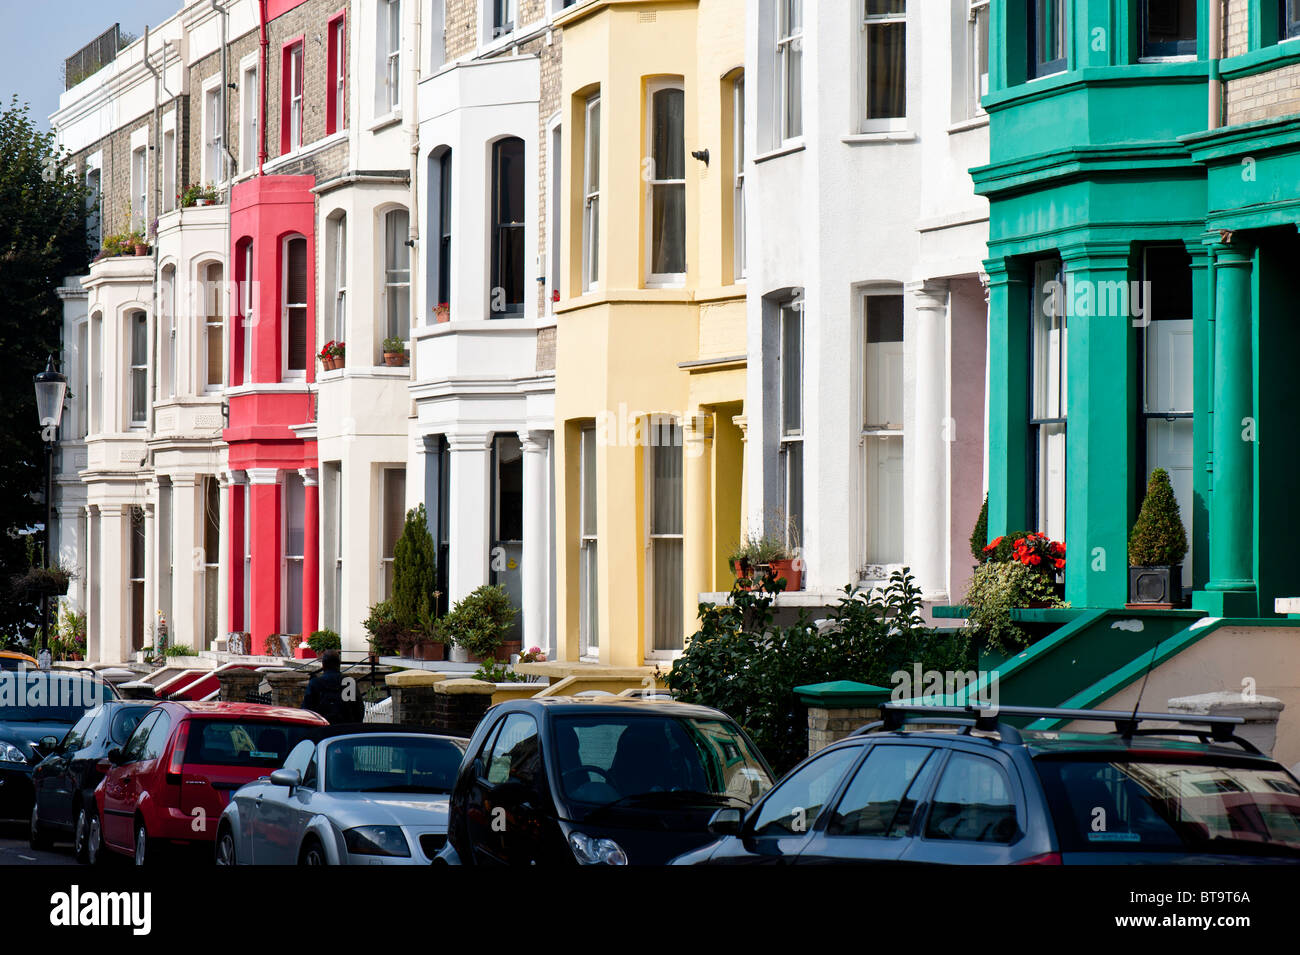 Façades colorées de maisons dans la région de Ladbroke Grove, W11, Londres, Royaume-Uni Banque D'Images